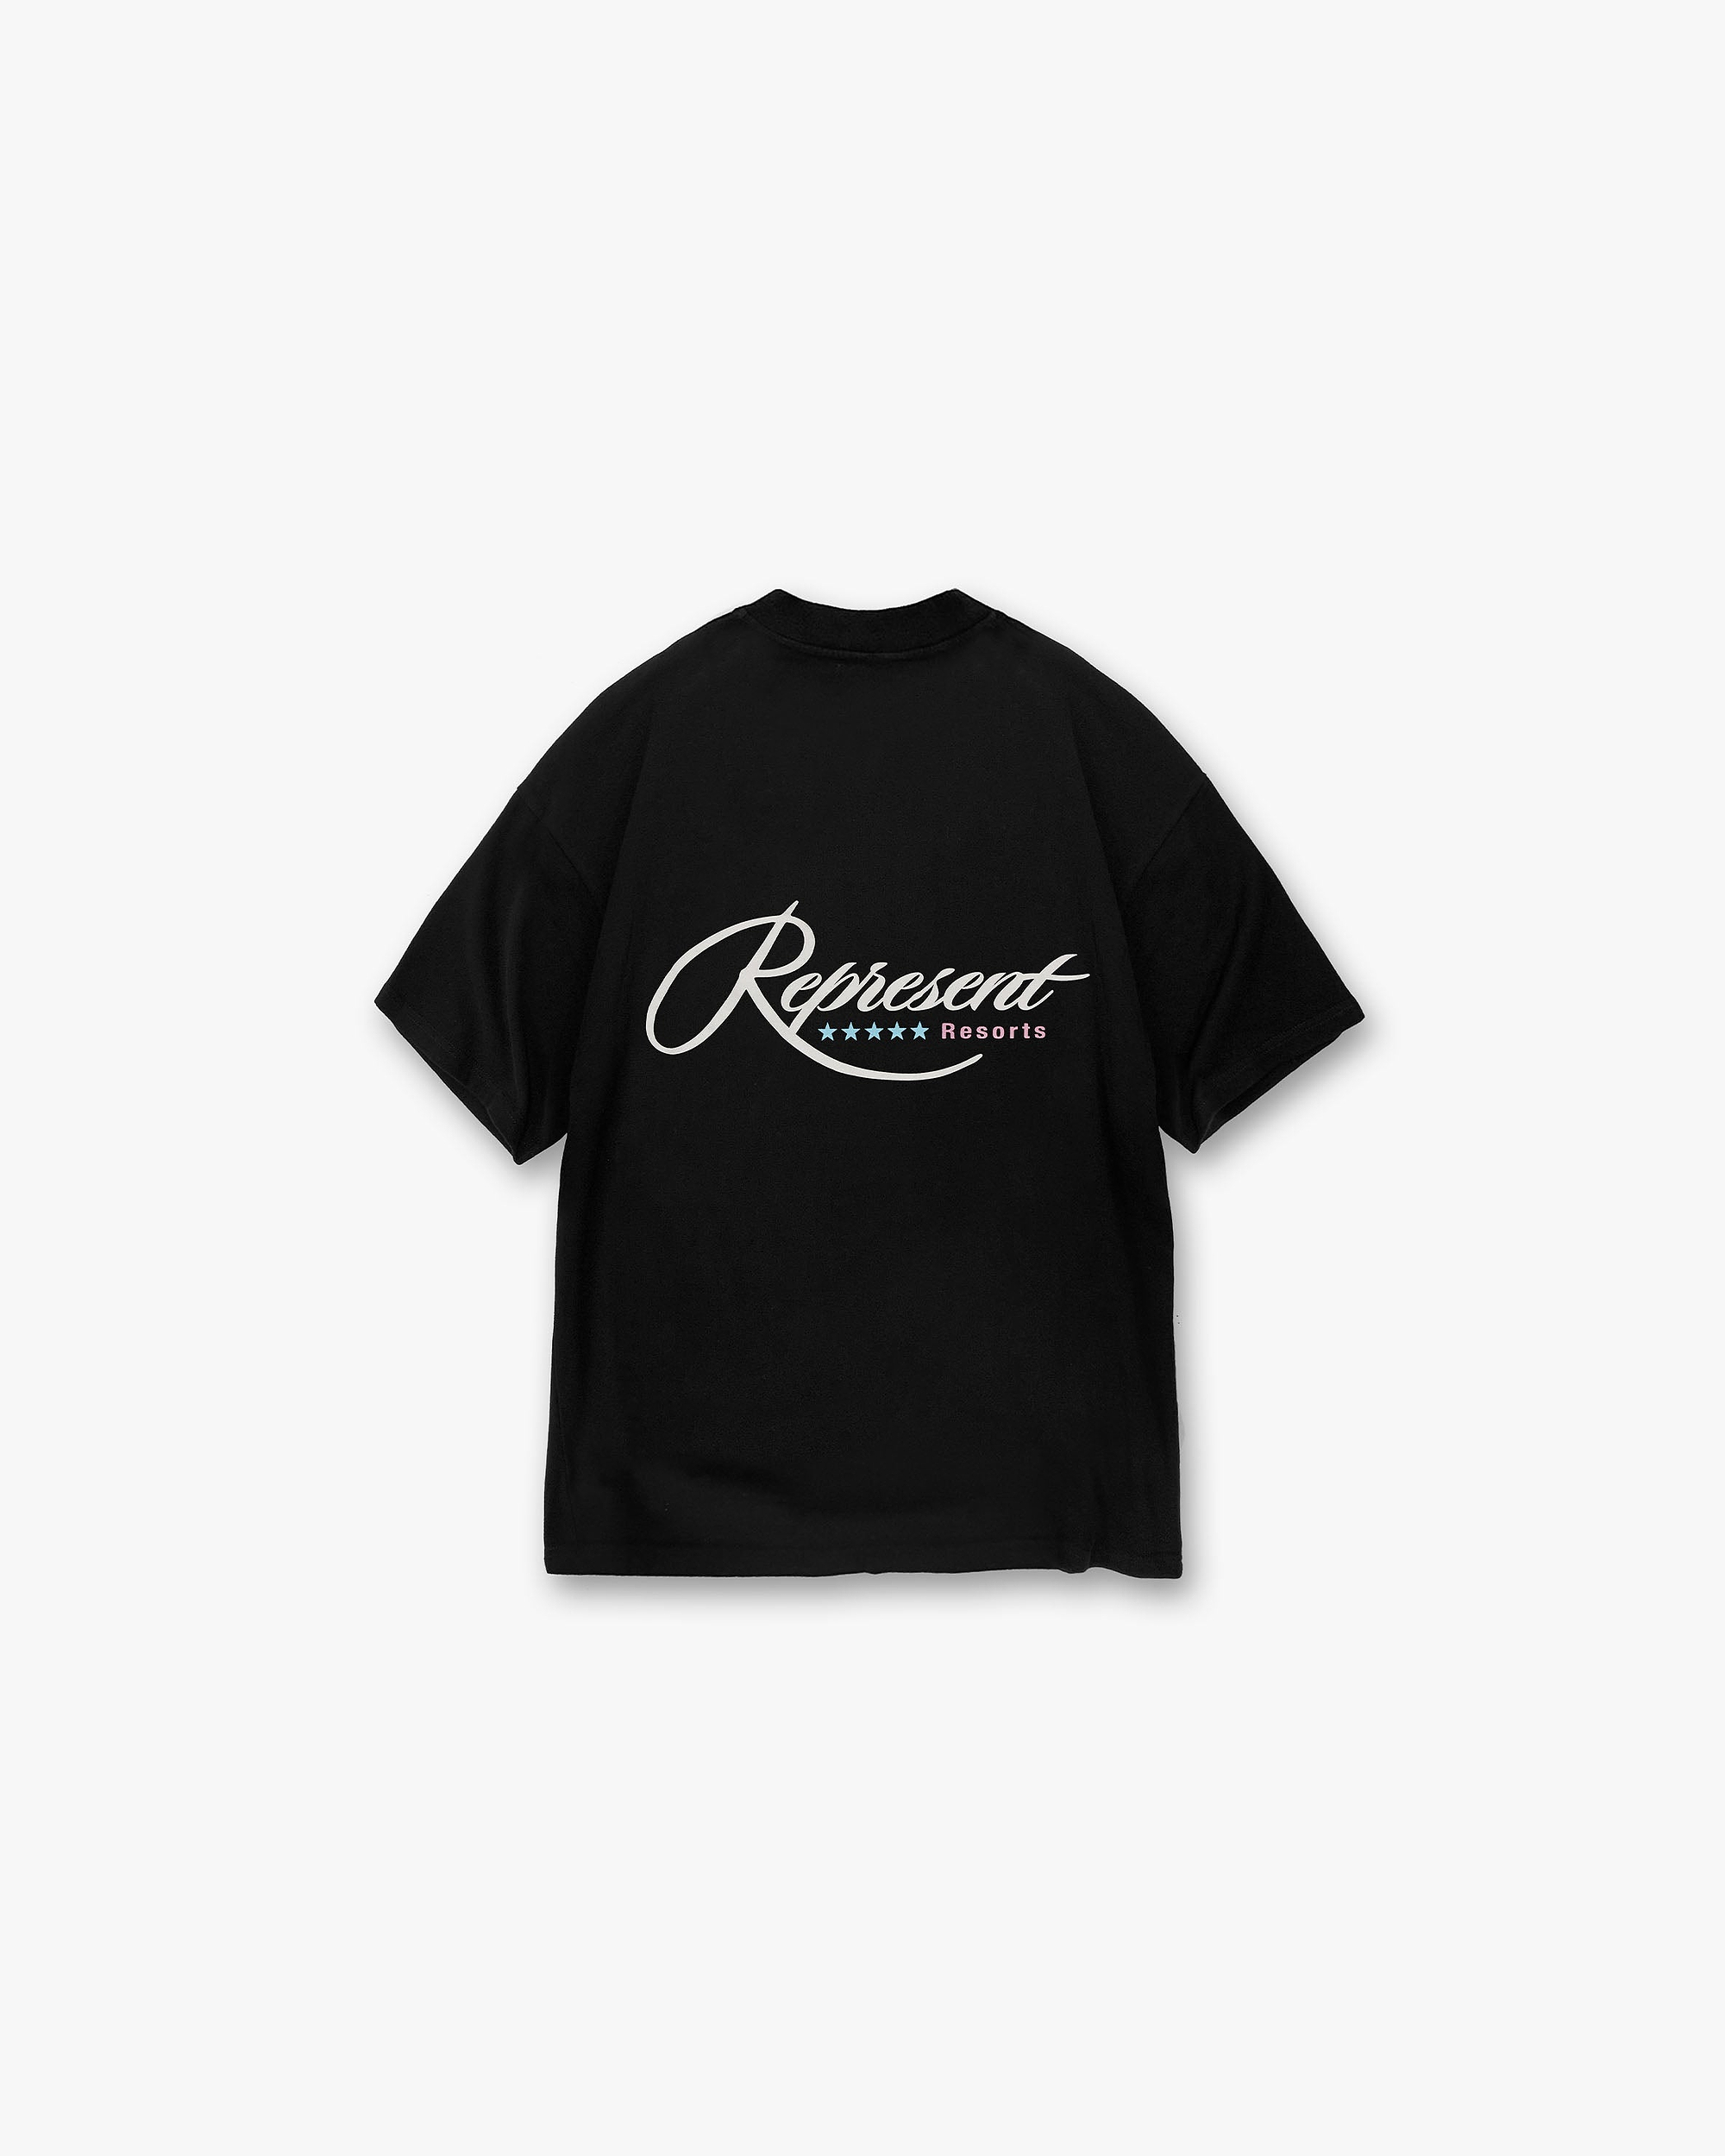 Resort T-Shirt | Black T-Shirts SC23 | Represent Clo